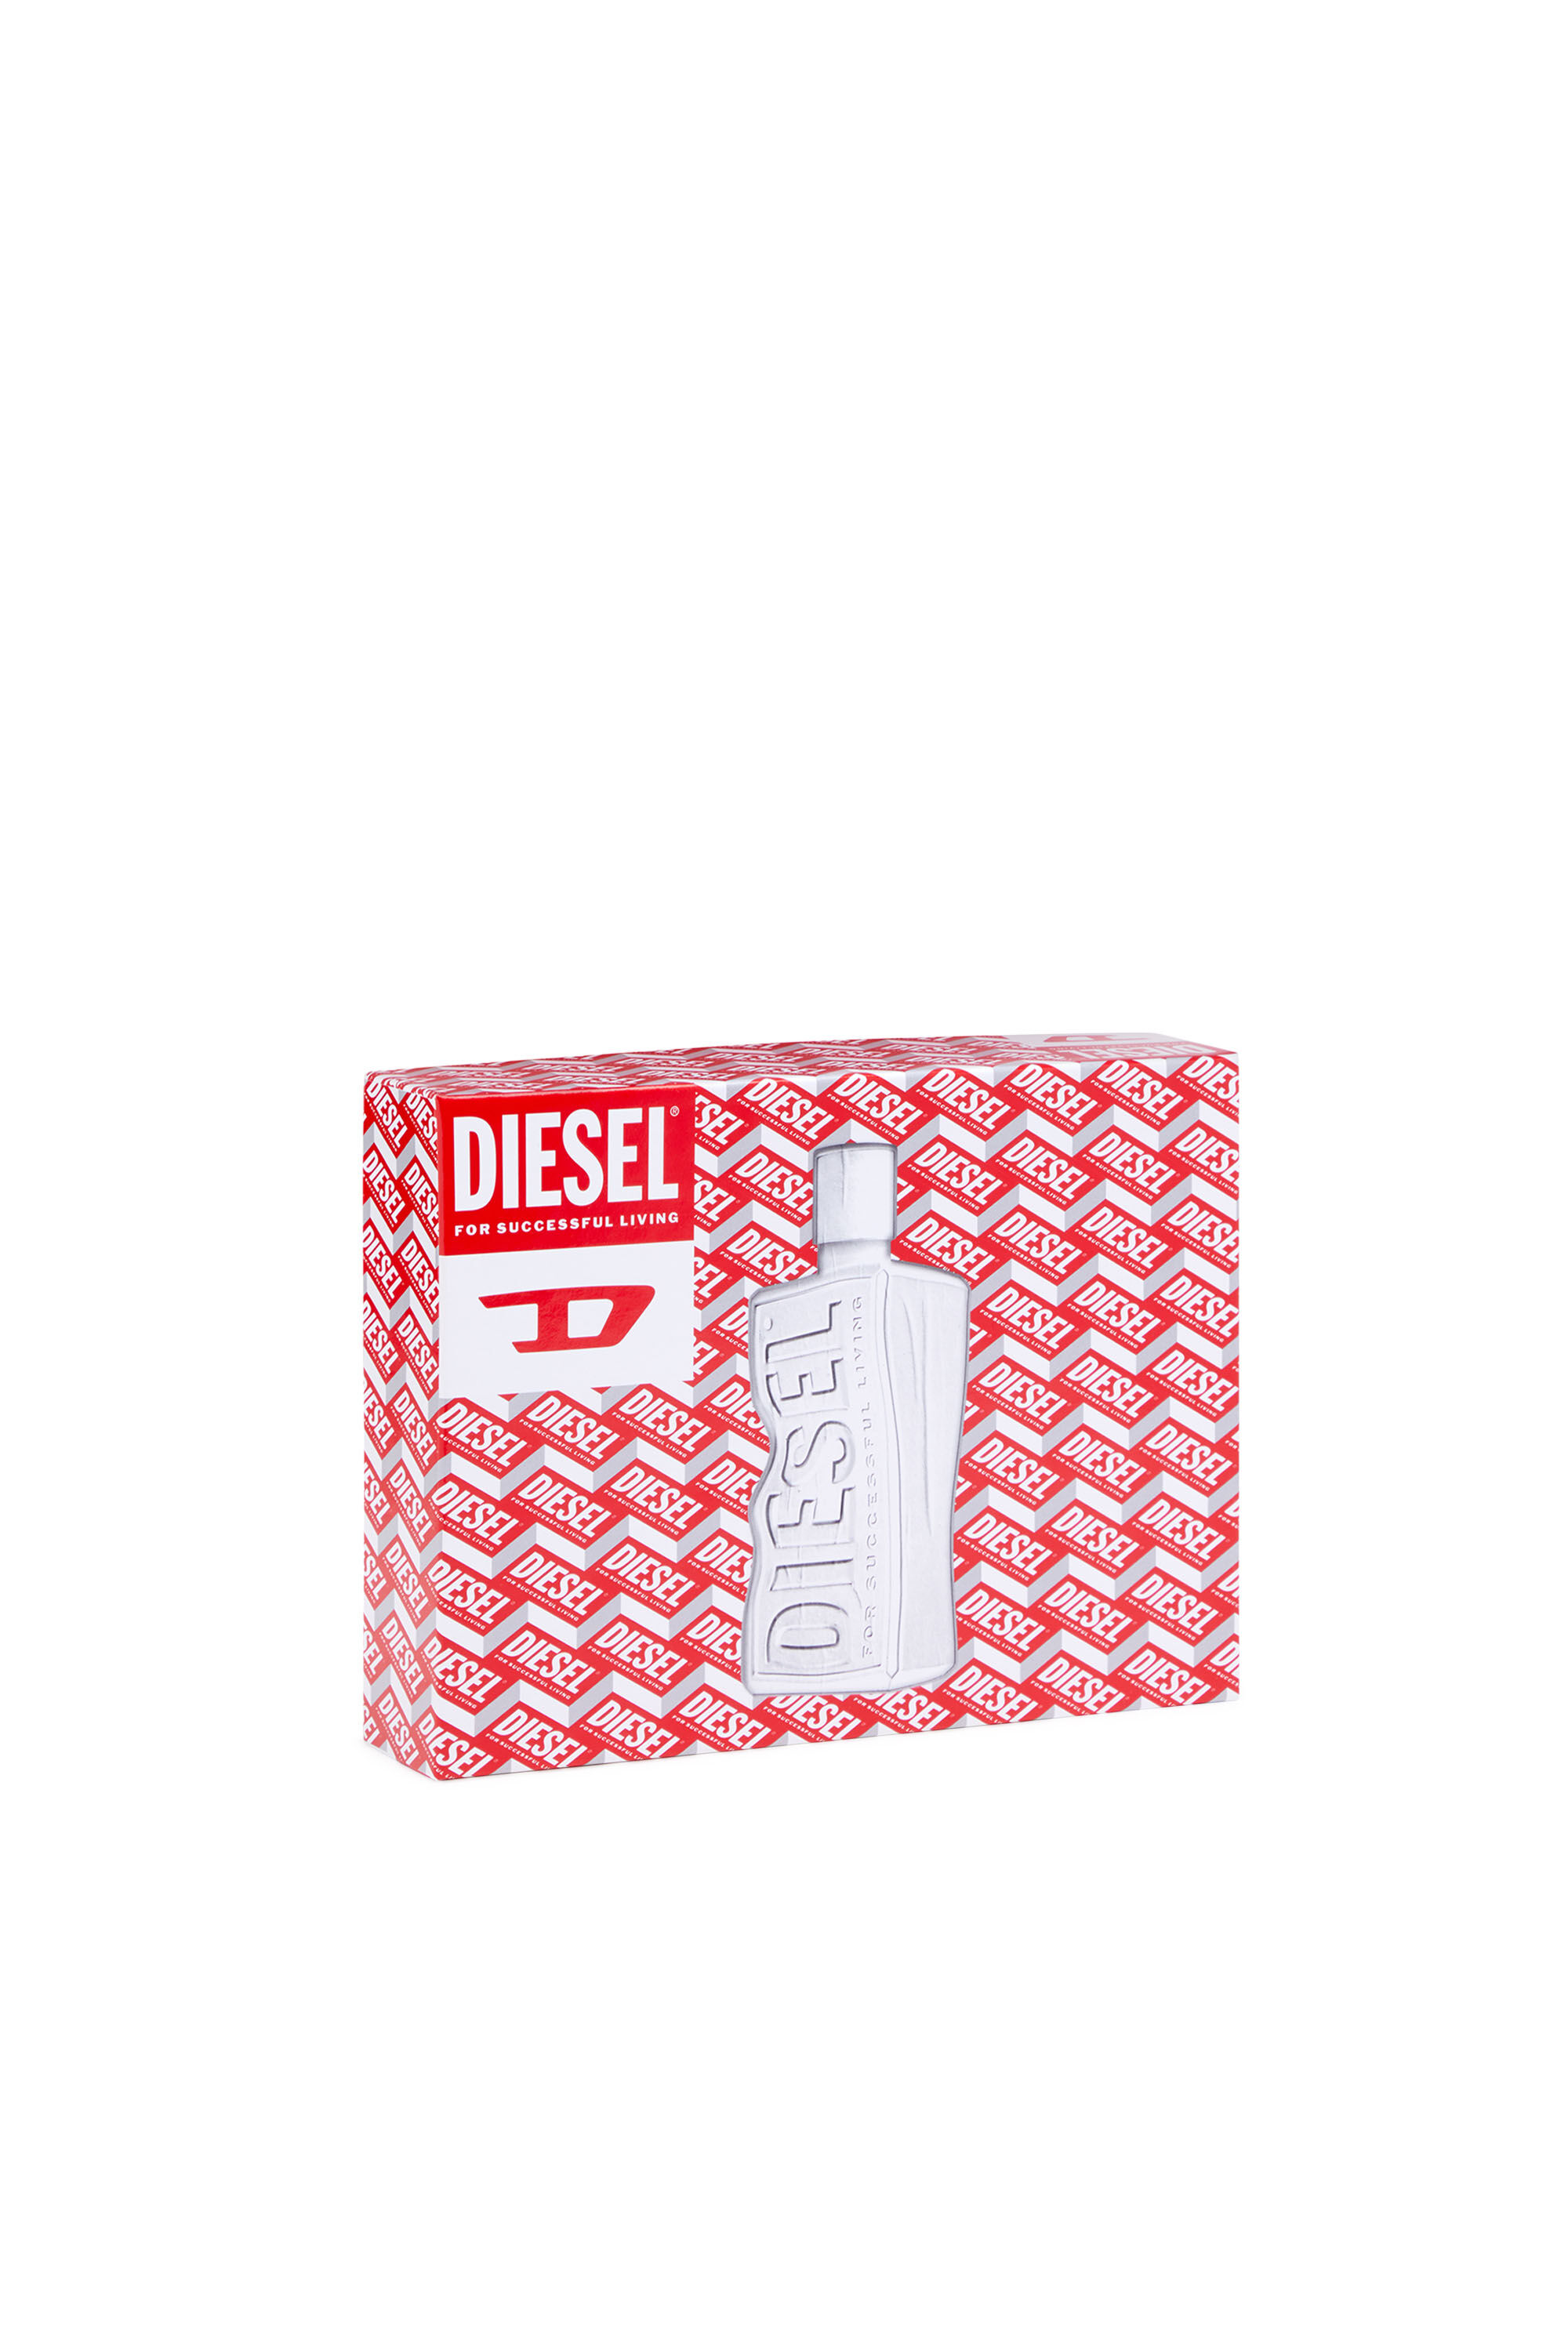 Diesel - D 50ML GIFT SET, White - Image 4